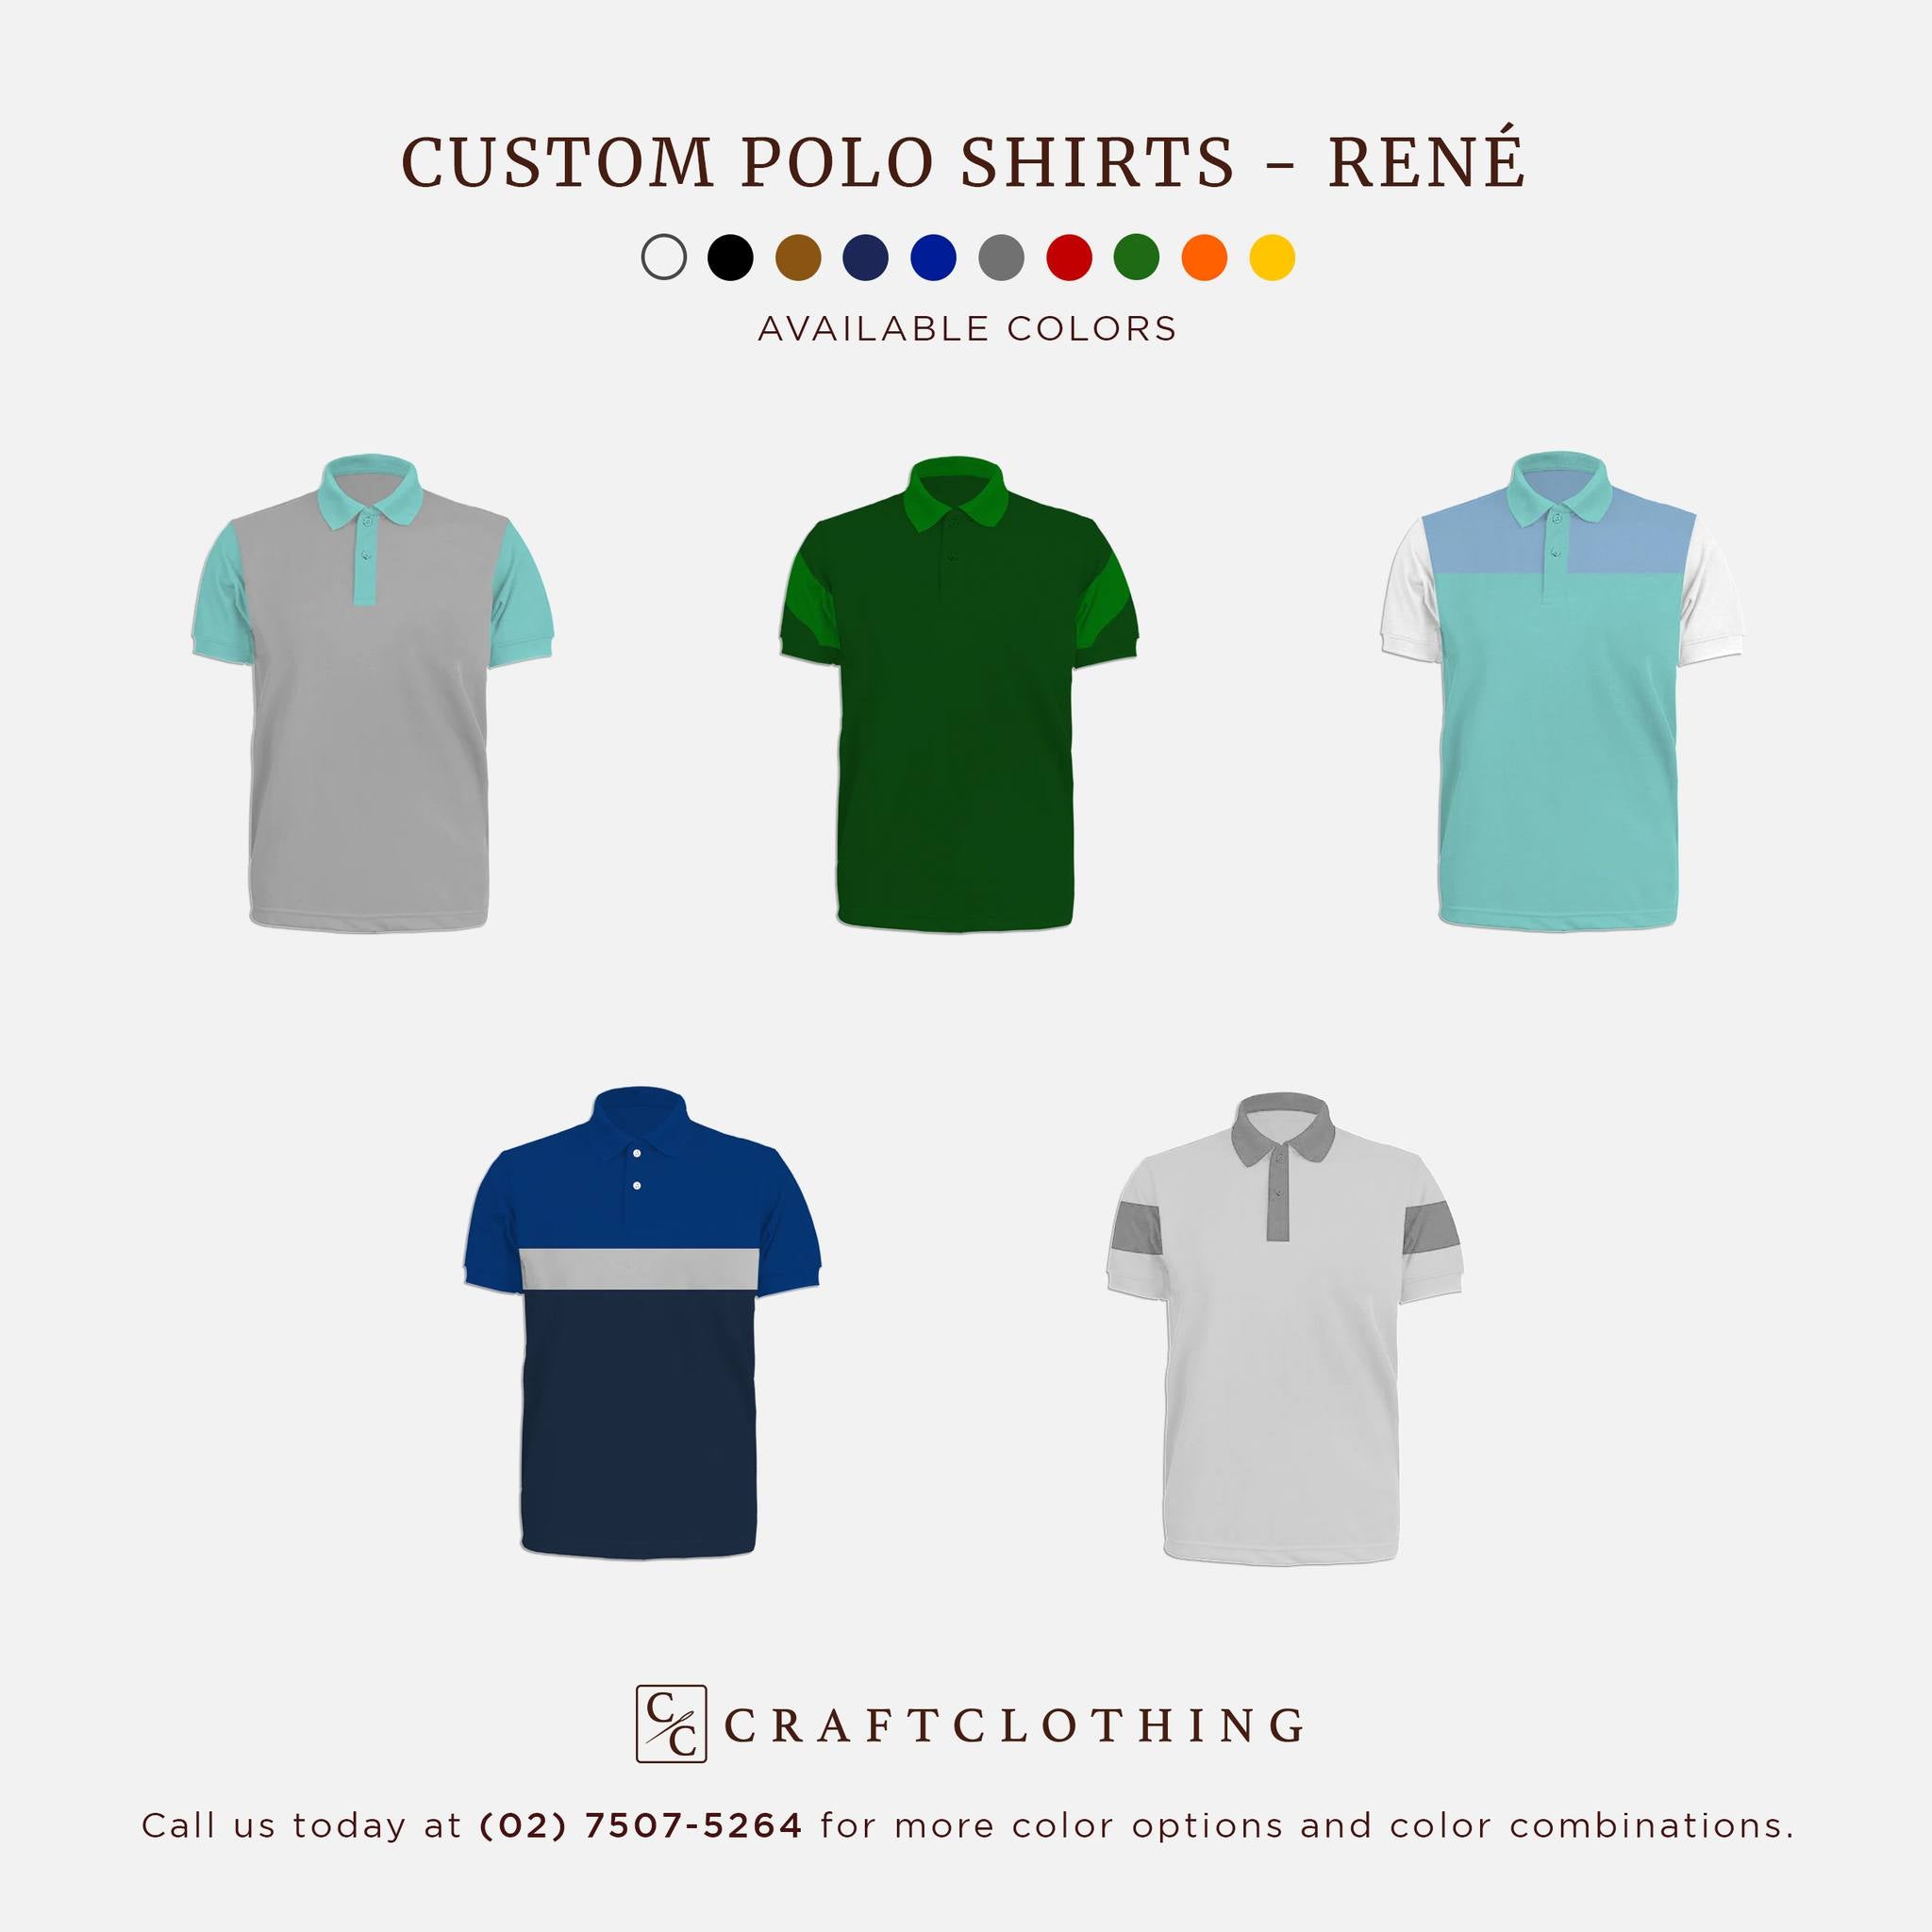 Meet our René Custom Polo Shirt